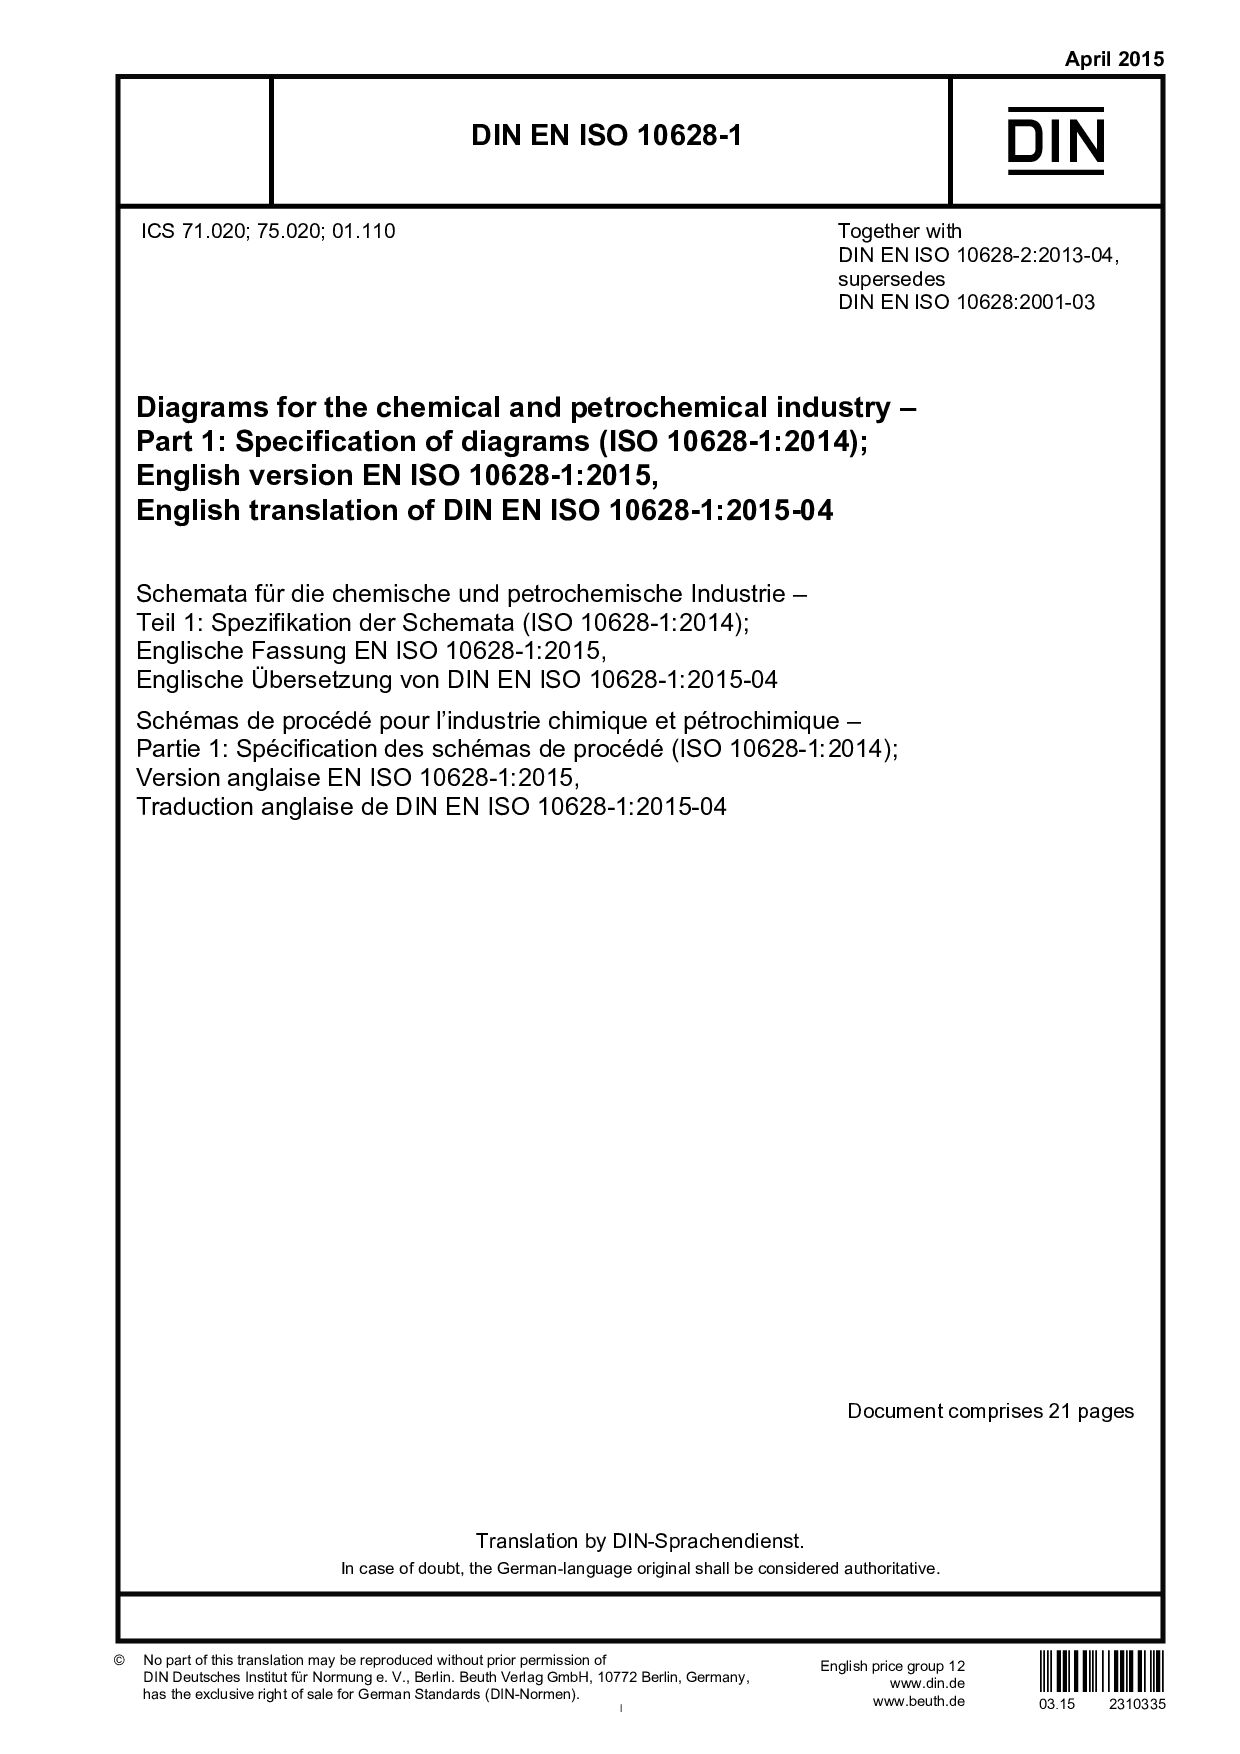 DIN EN ISO 10628-1:2015封面图